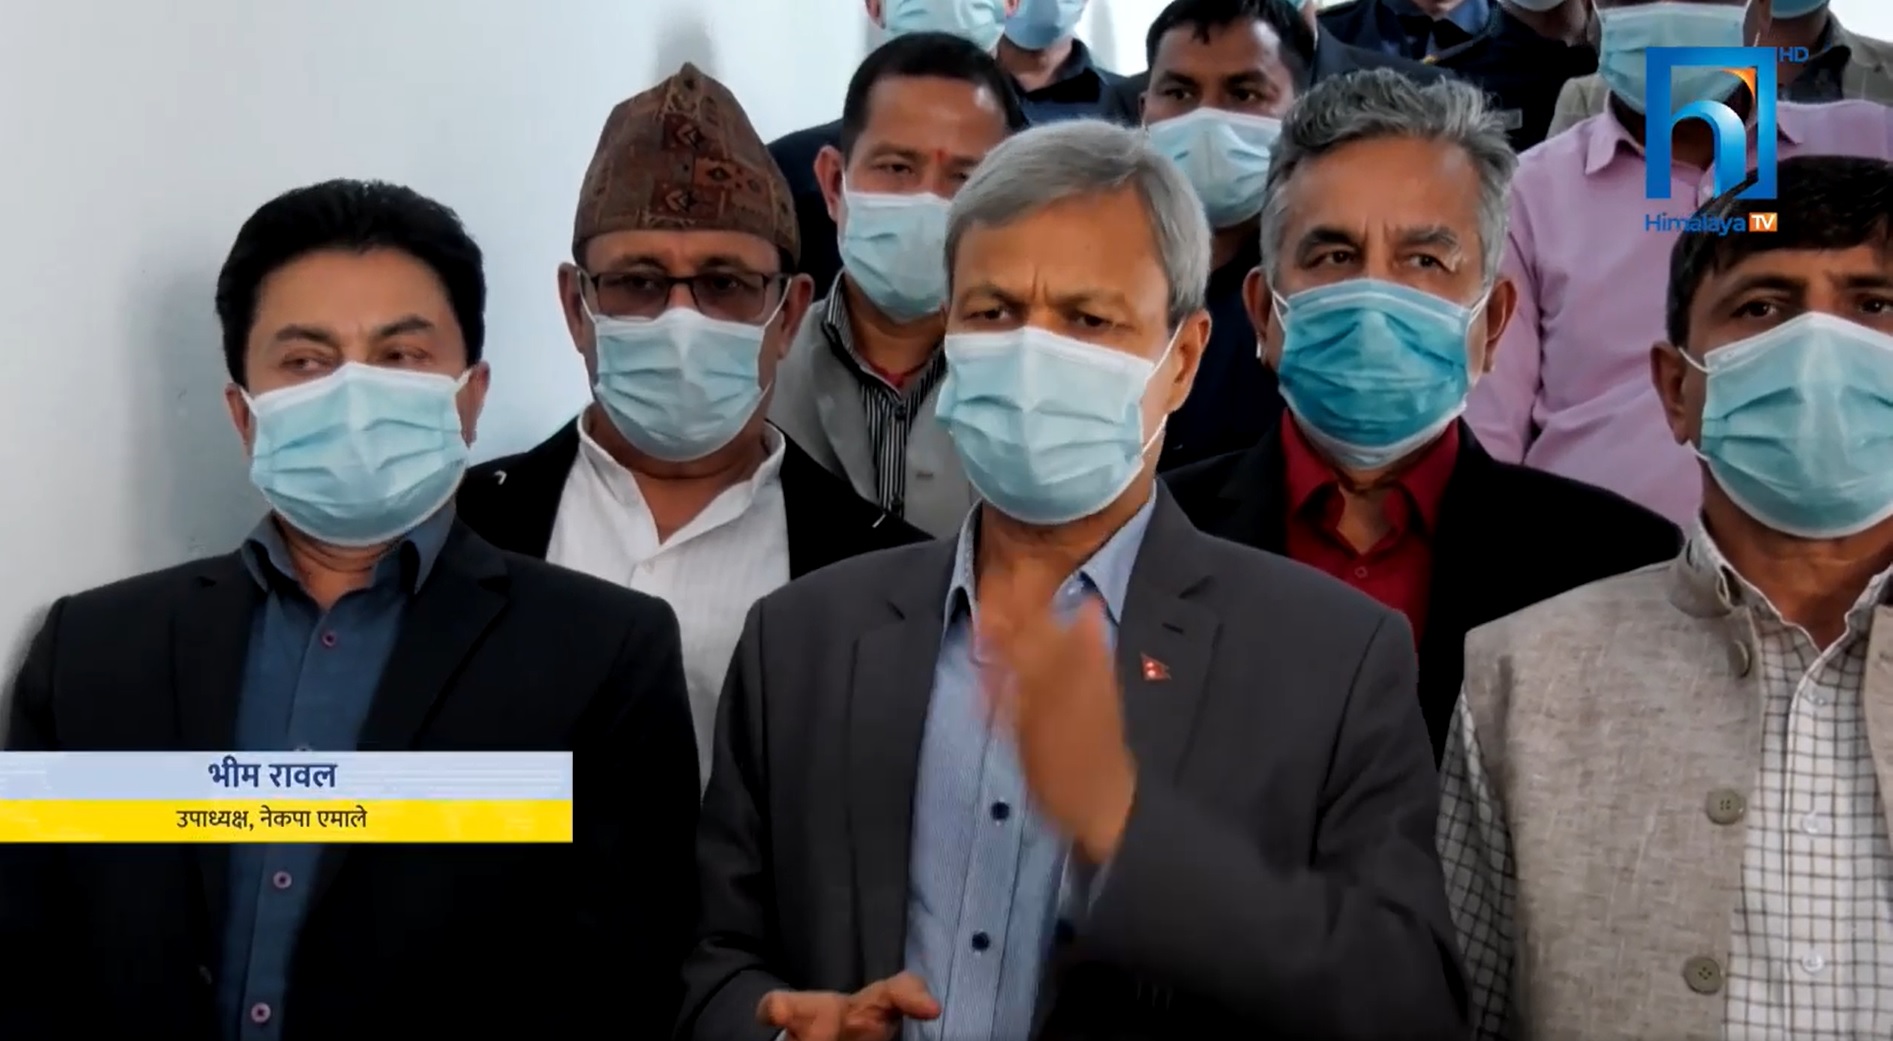 ओलीले बैठक रोक्न किन मानेनन् ? नेपाल समूहद्वारा बैठक बहिस्कार (भिडियो रिपोर्टसहित)